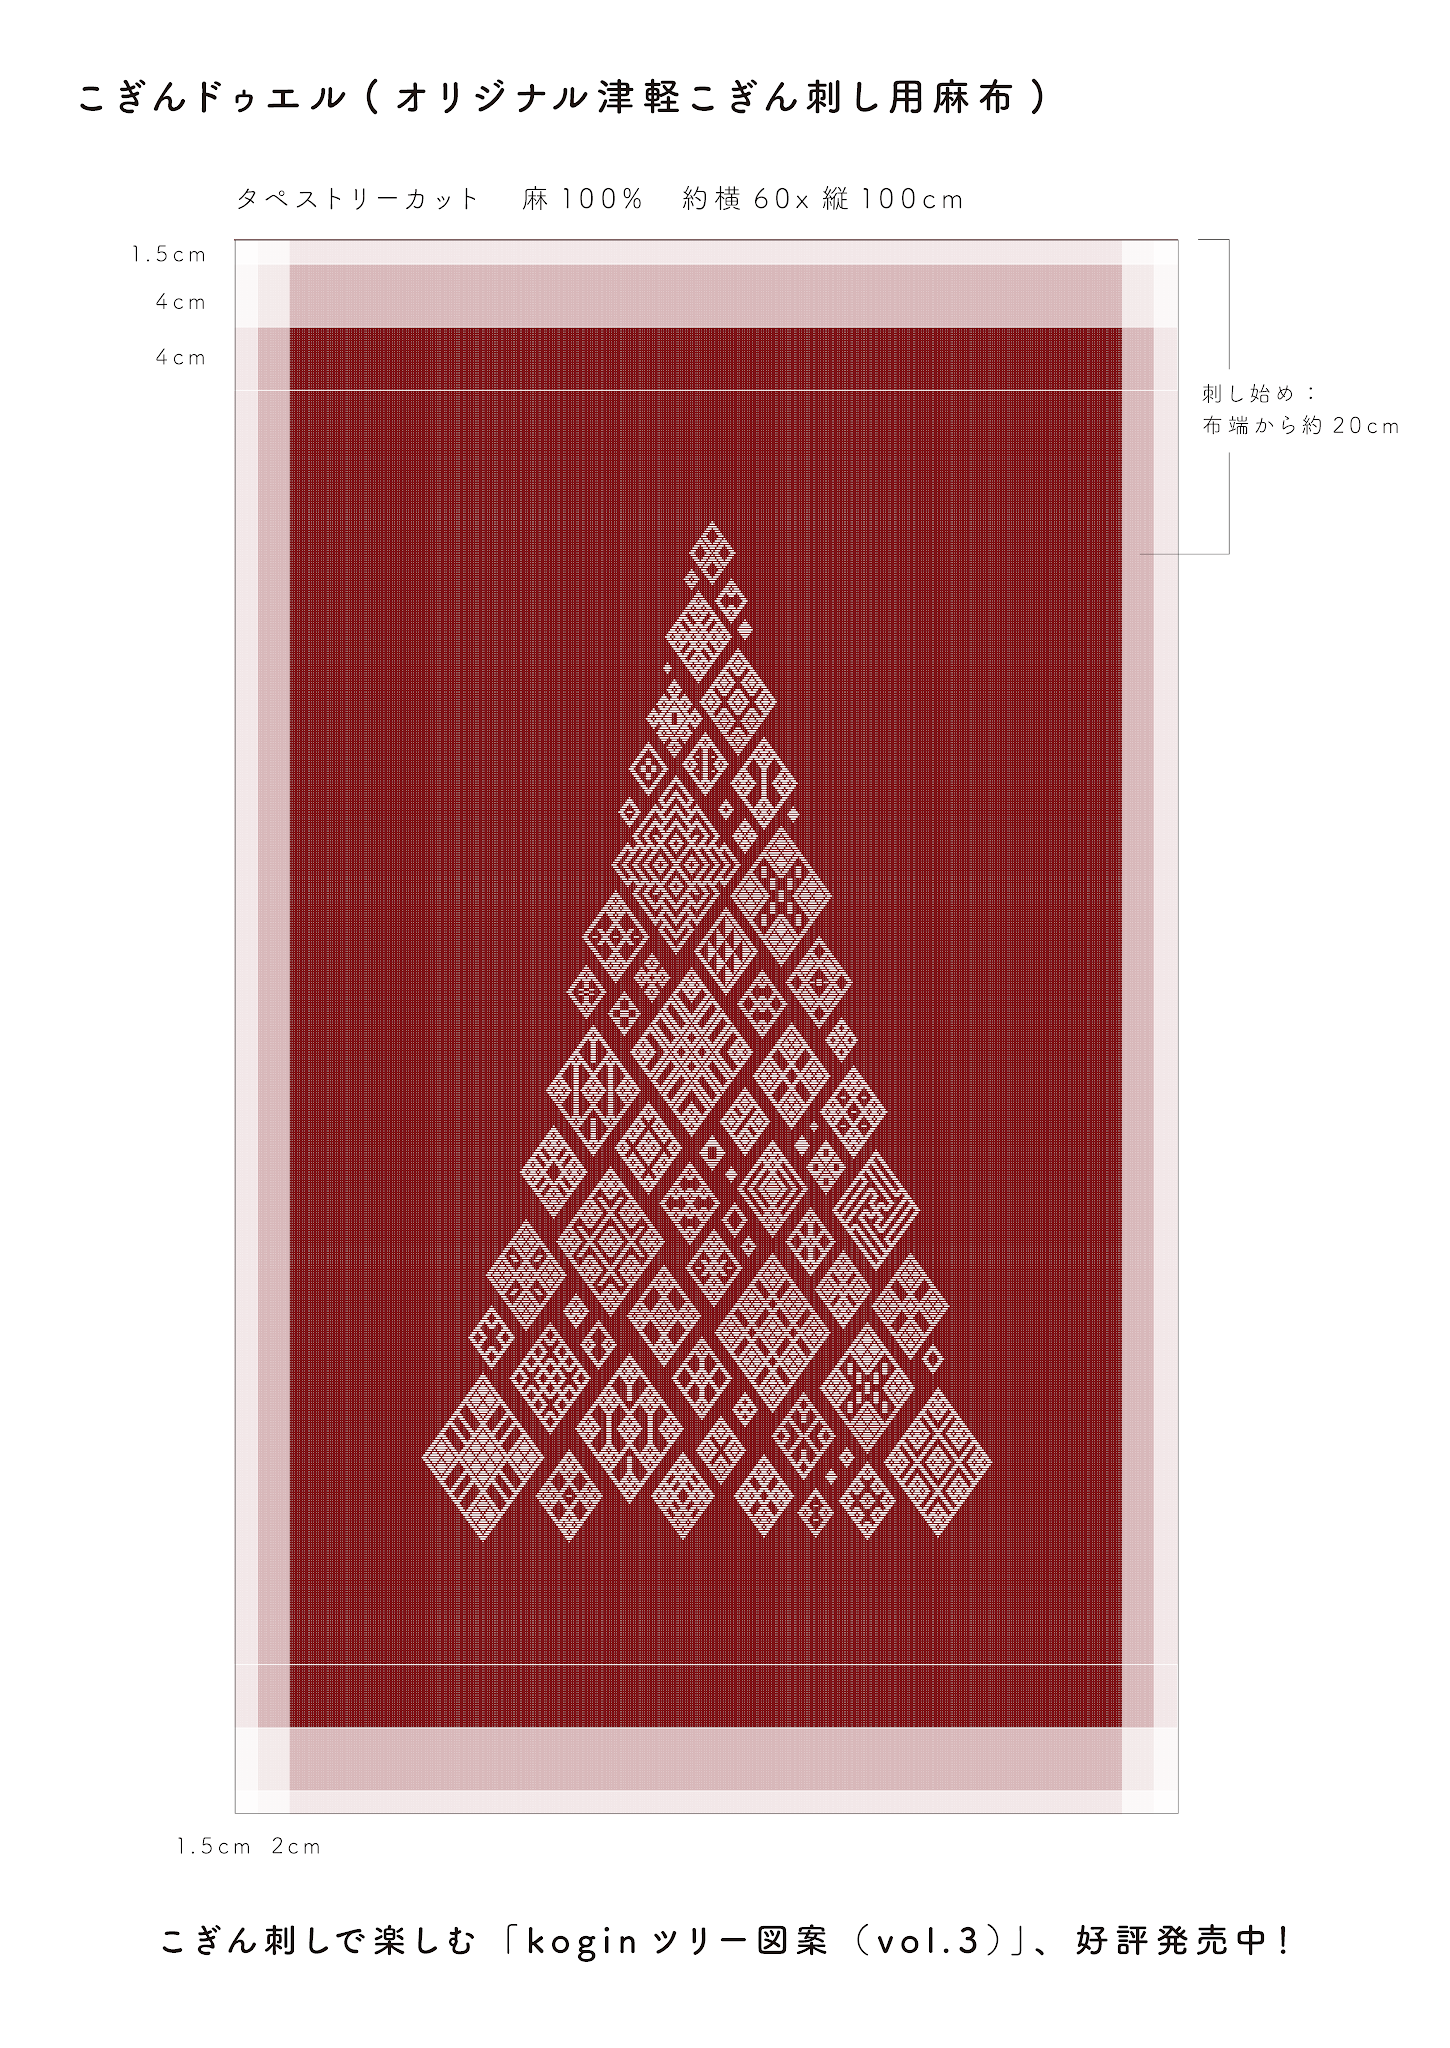 大好評 和の伝統模様でクリスマス こぎん刺しで作る Koginツリー図案 22年9月更新